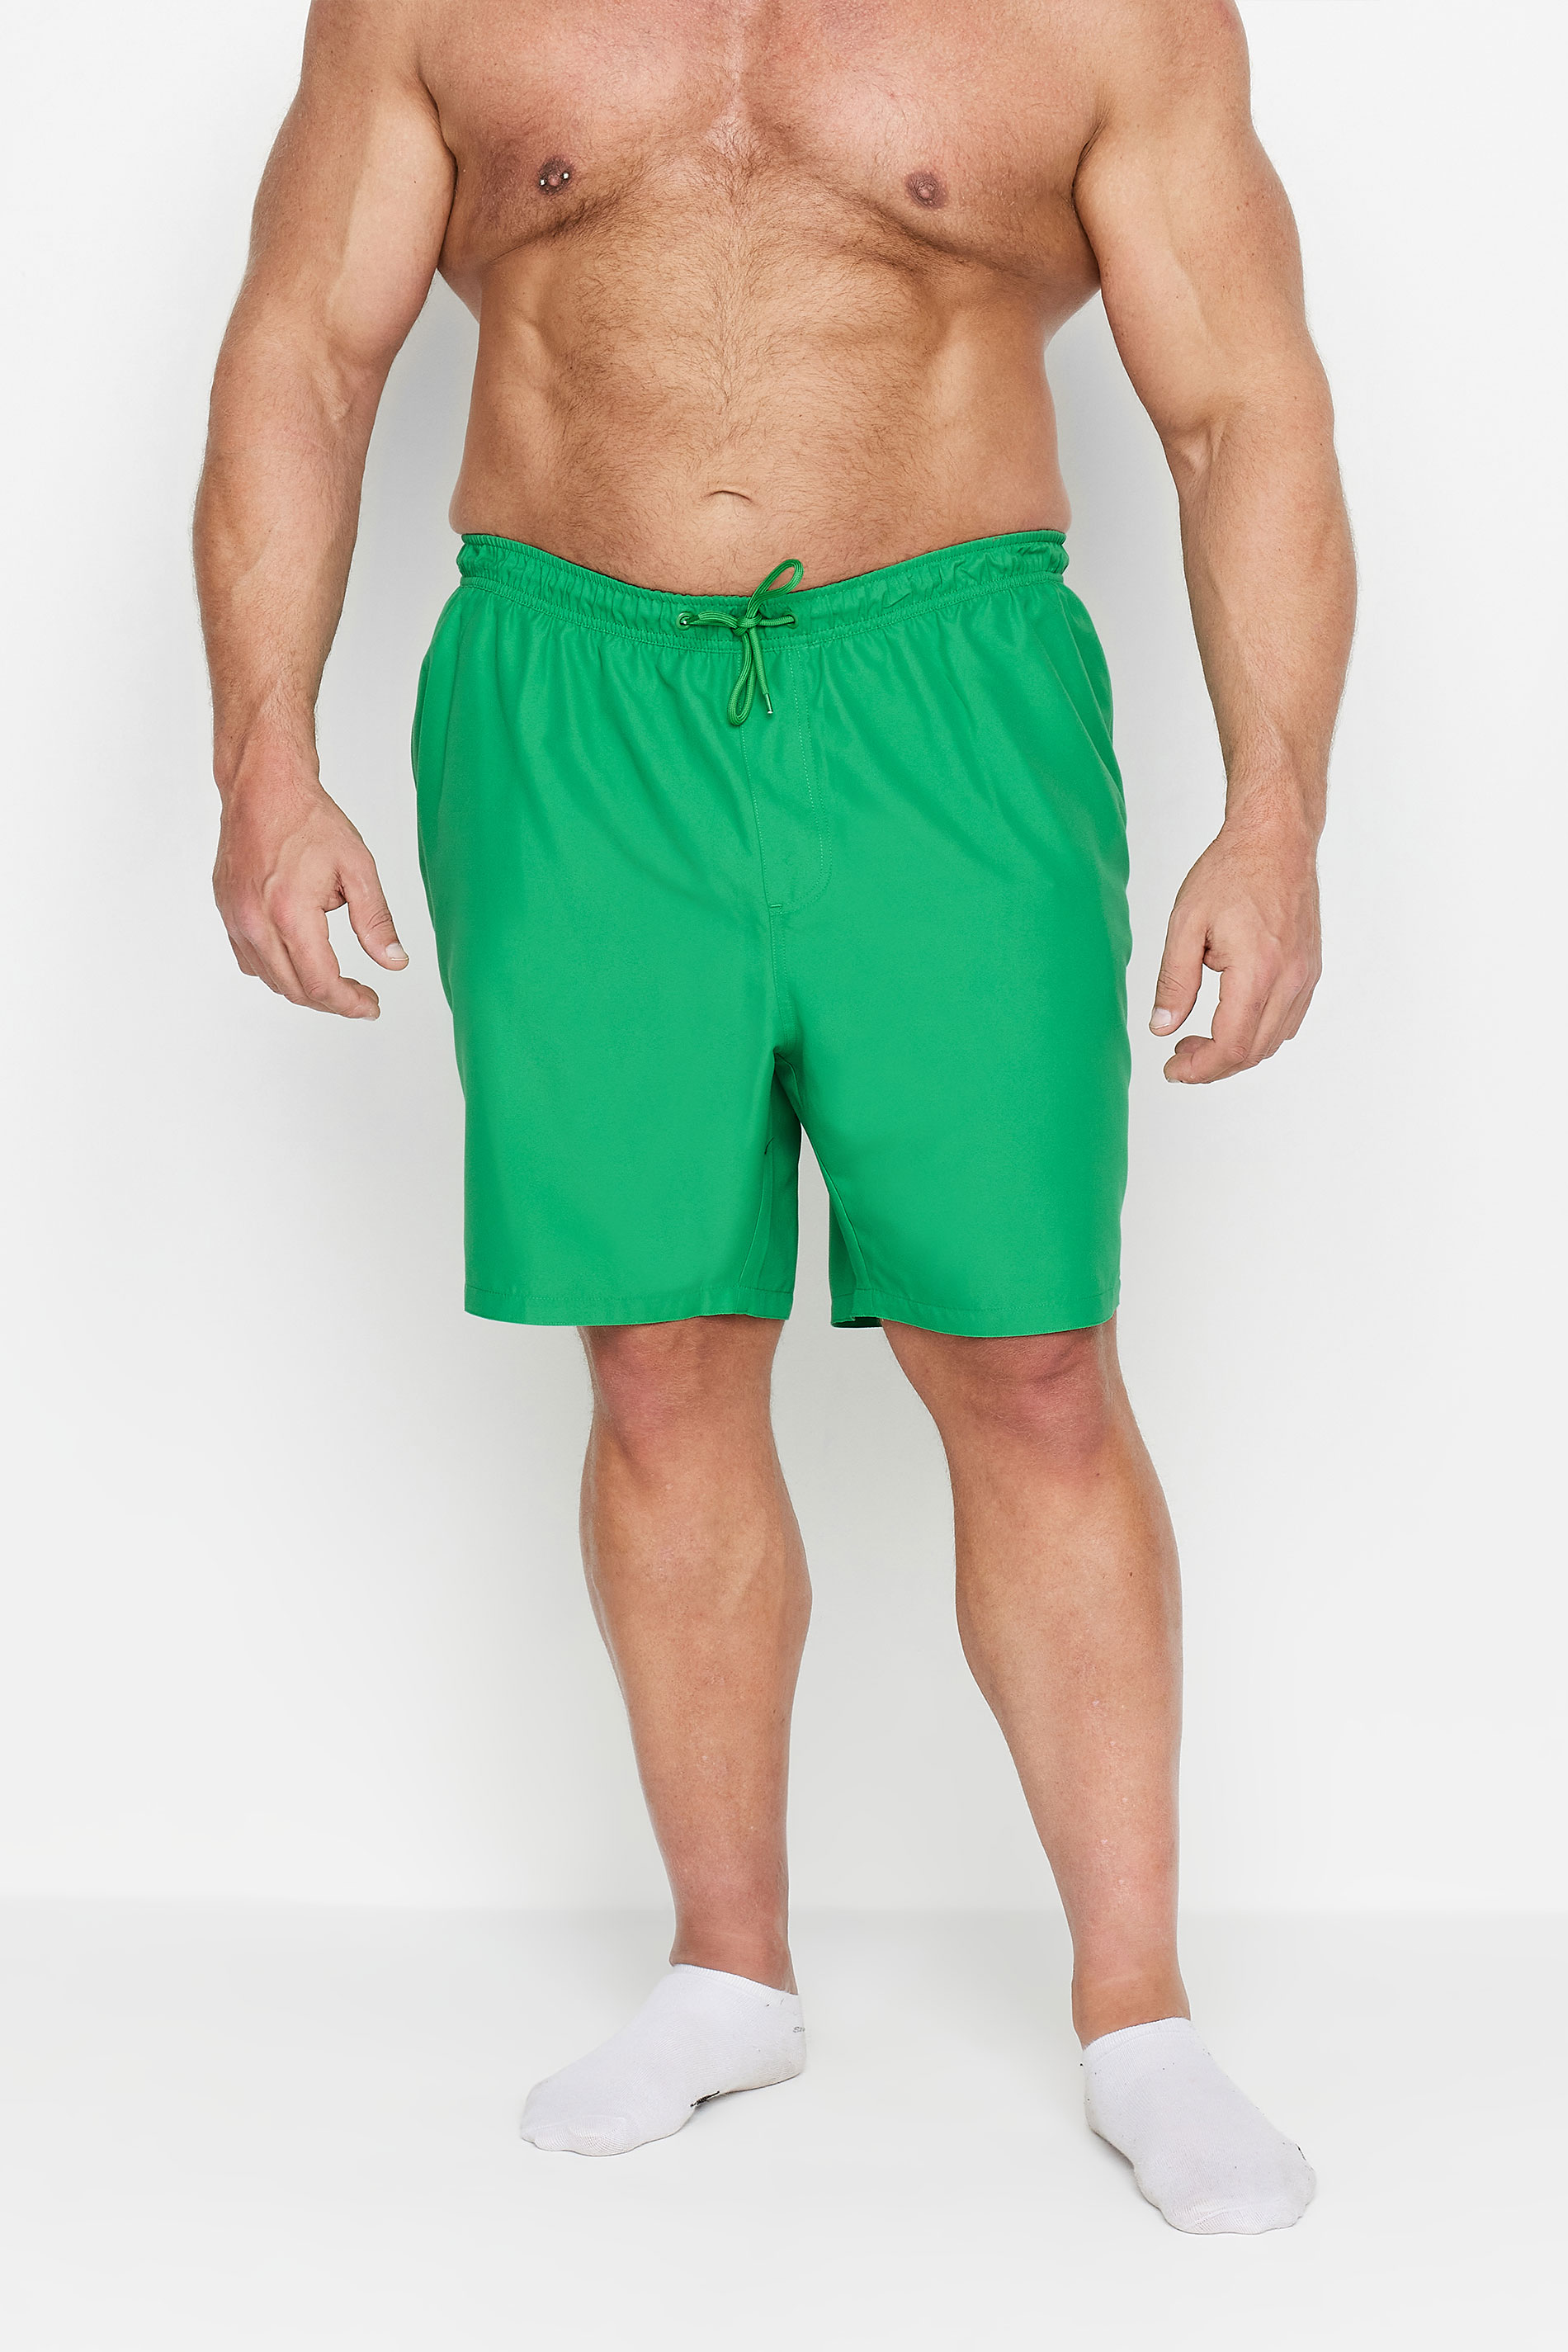 BadRhino Big & Tall Plain Green Swim Shorts | BadRhino 1